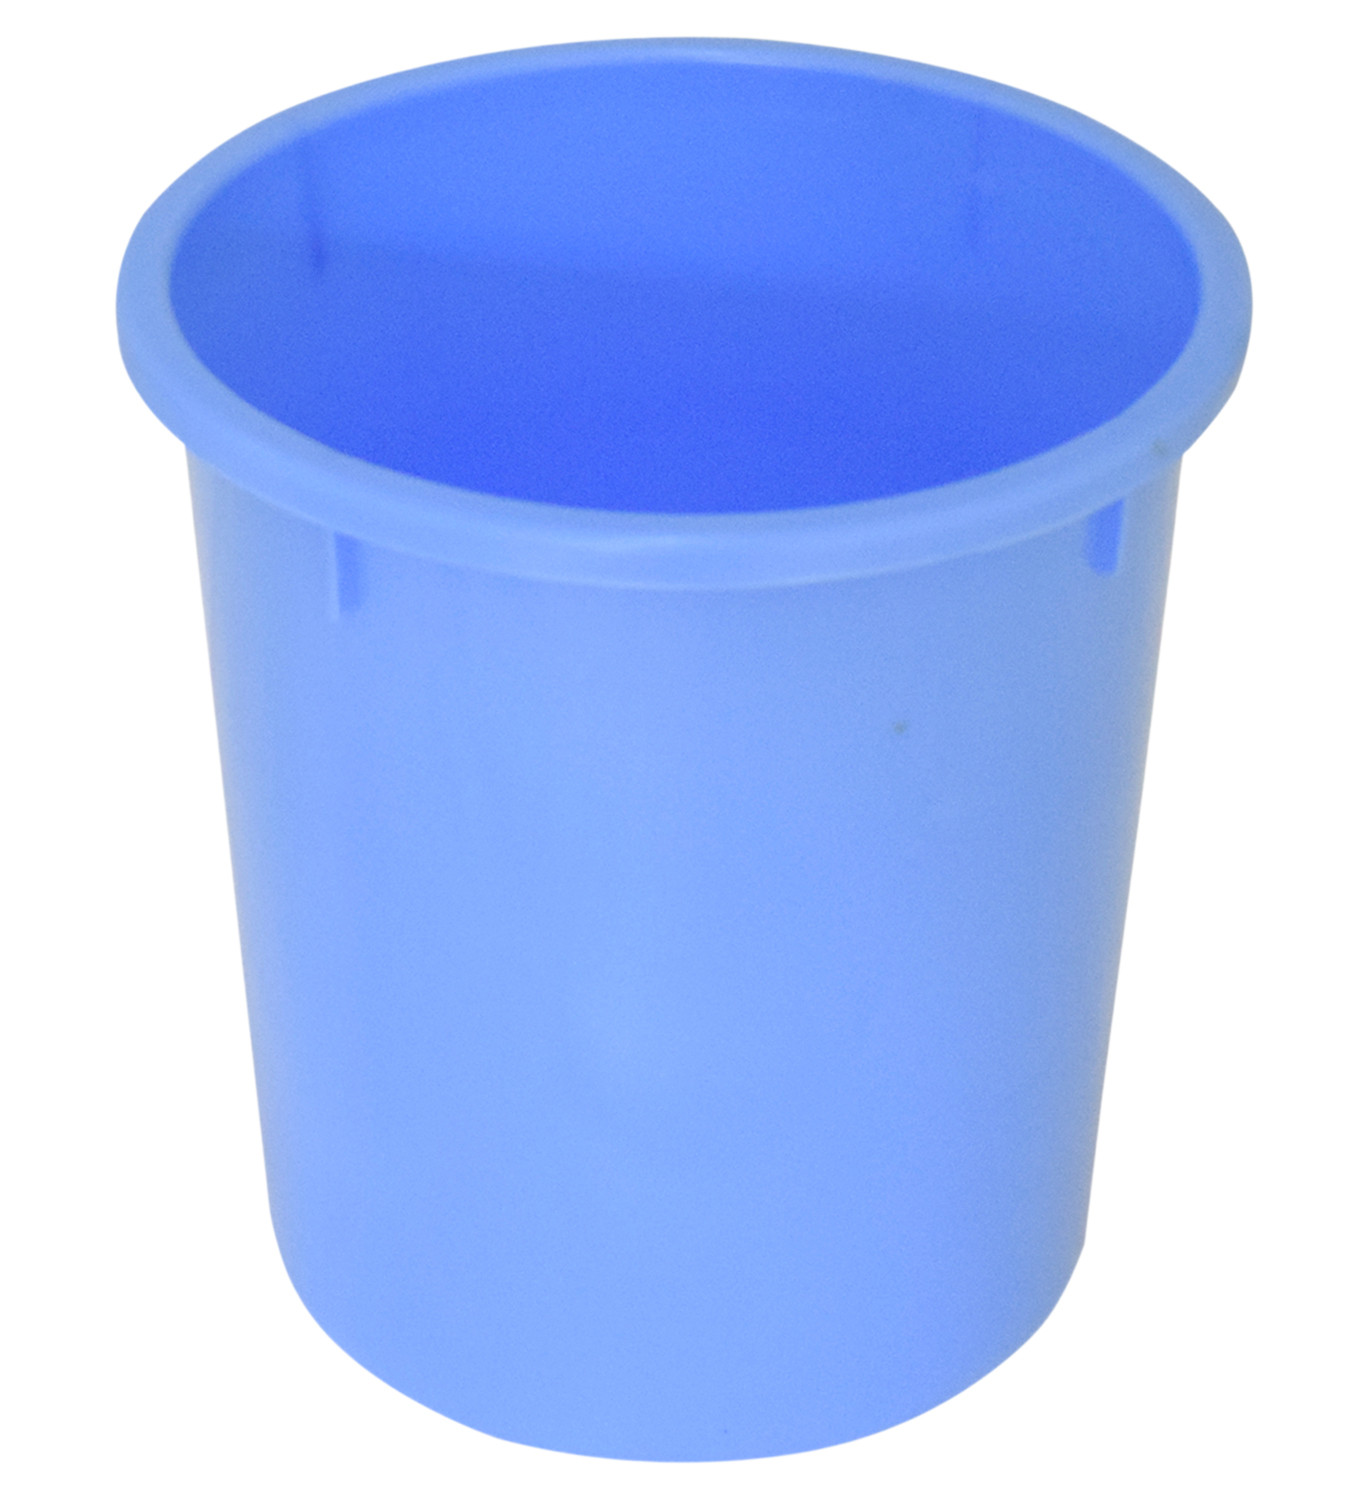 Kuber Industries Plastic Open Dustbin, Garbage Bin For Home, Kitchen, Office, 5Ltr. (Blue)-47KM01037